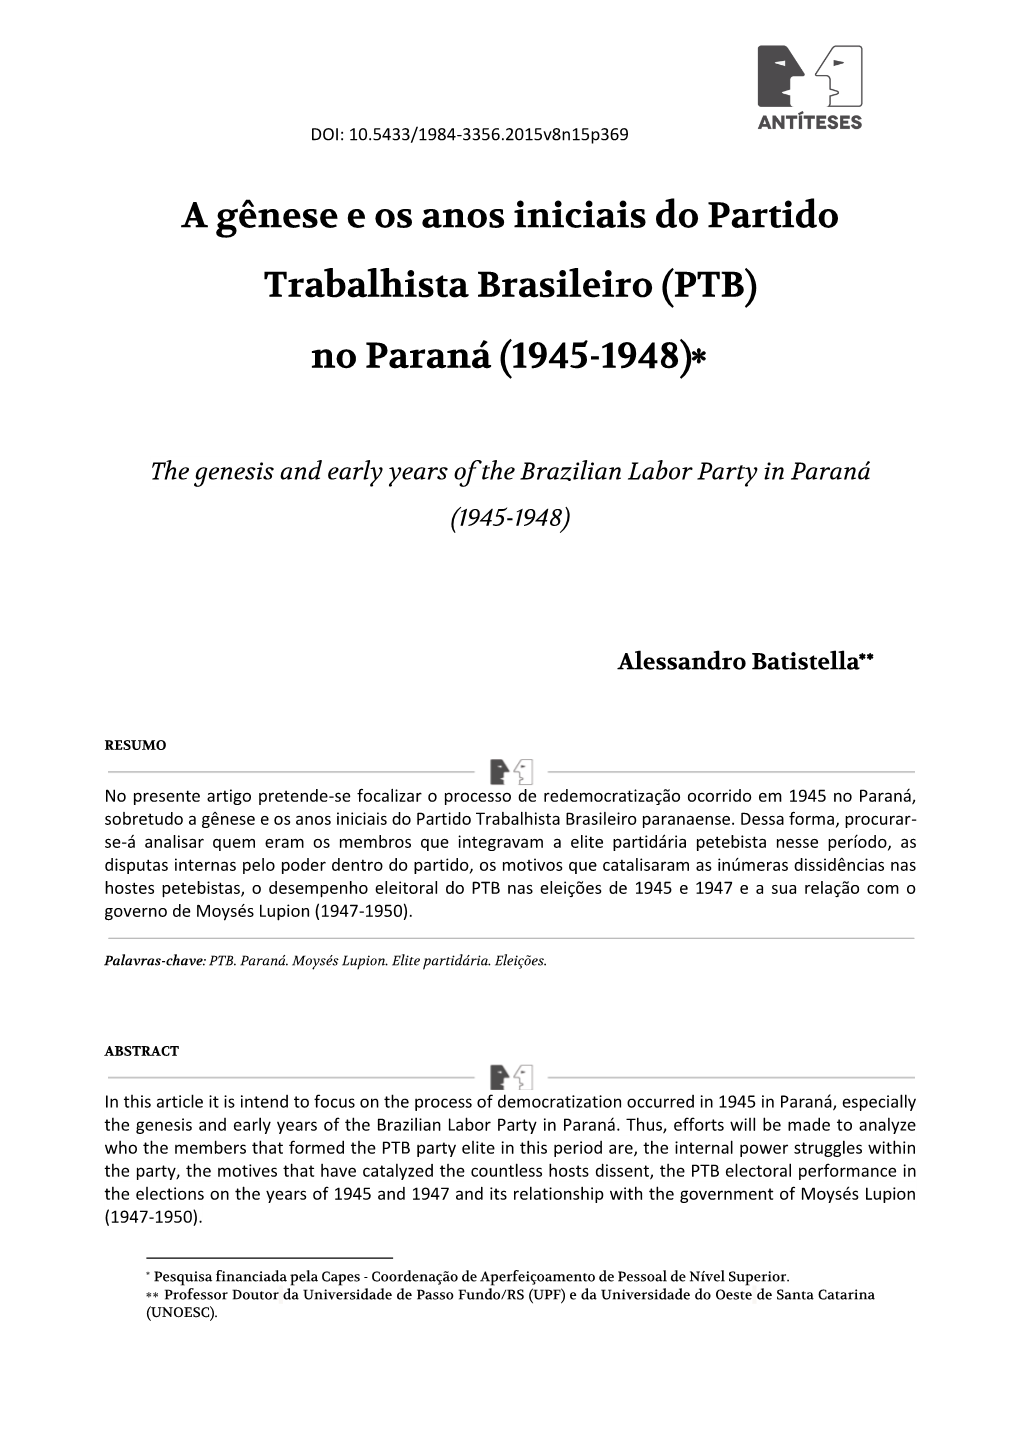 A Gênese E Os Anos Iniciais Do Partido Trabalhista Brasileiro (PTB) No Paraná (1945-1948)